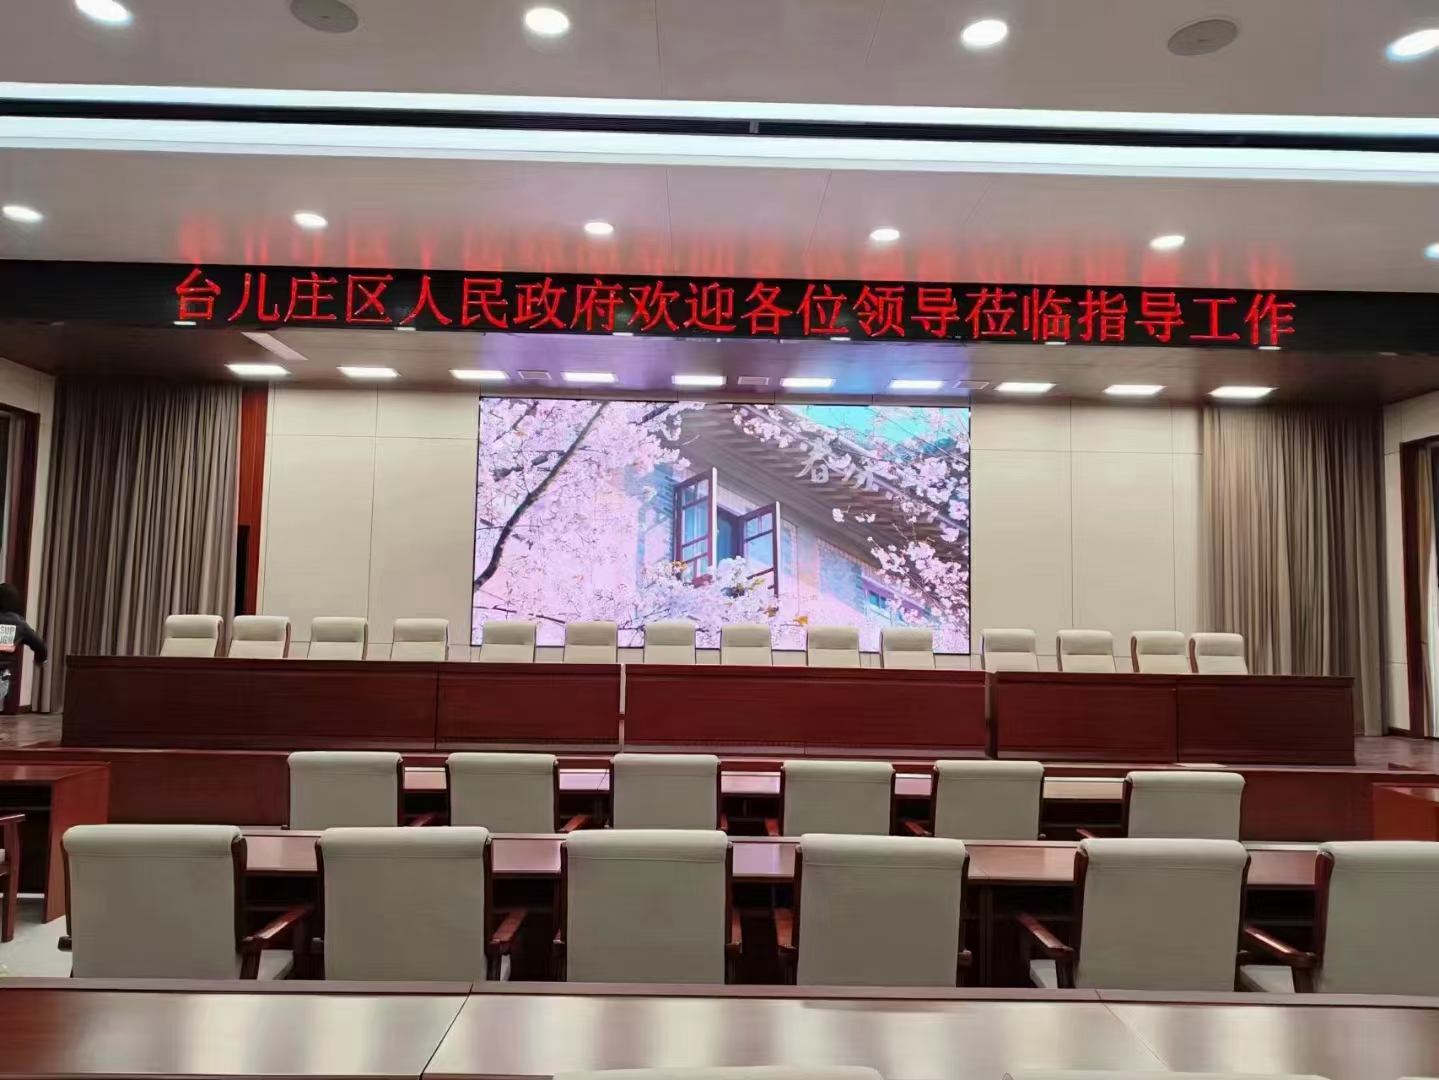 枣庄台儿庄人民政府室内报告大厅LED全彩显示大屏幕安装厂家